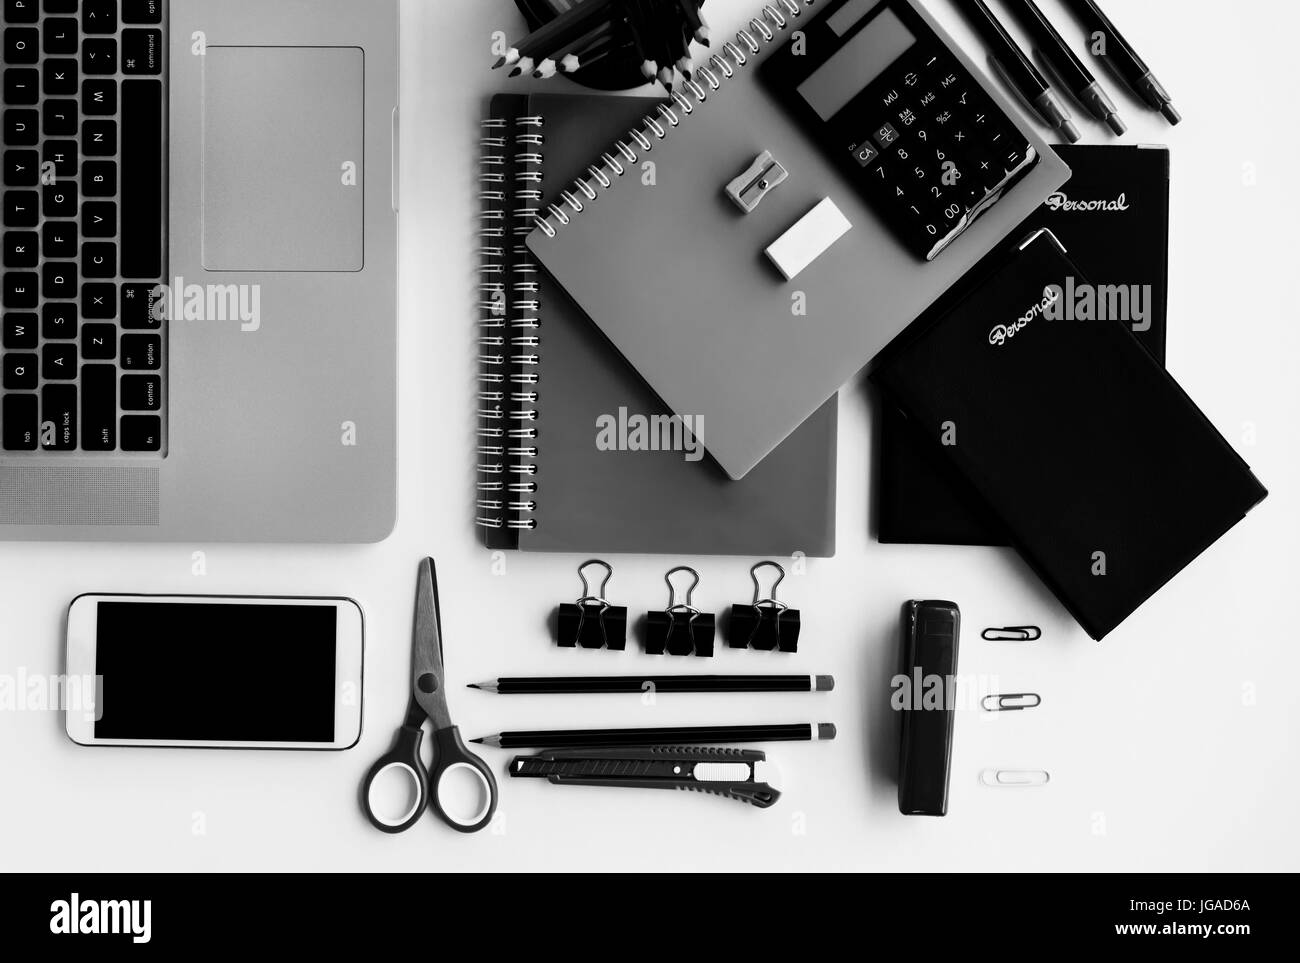 Vista superior de suministros de oficina, teléfonos inteligentes y ordenadores portátiles en blanco y negro Foto de stock